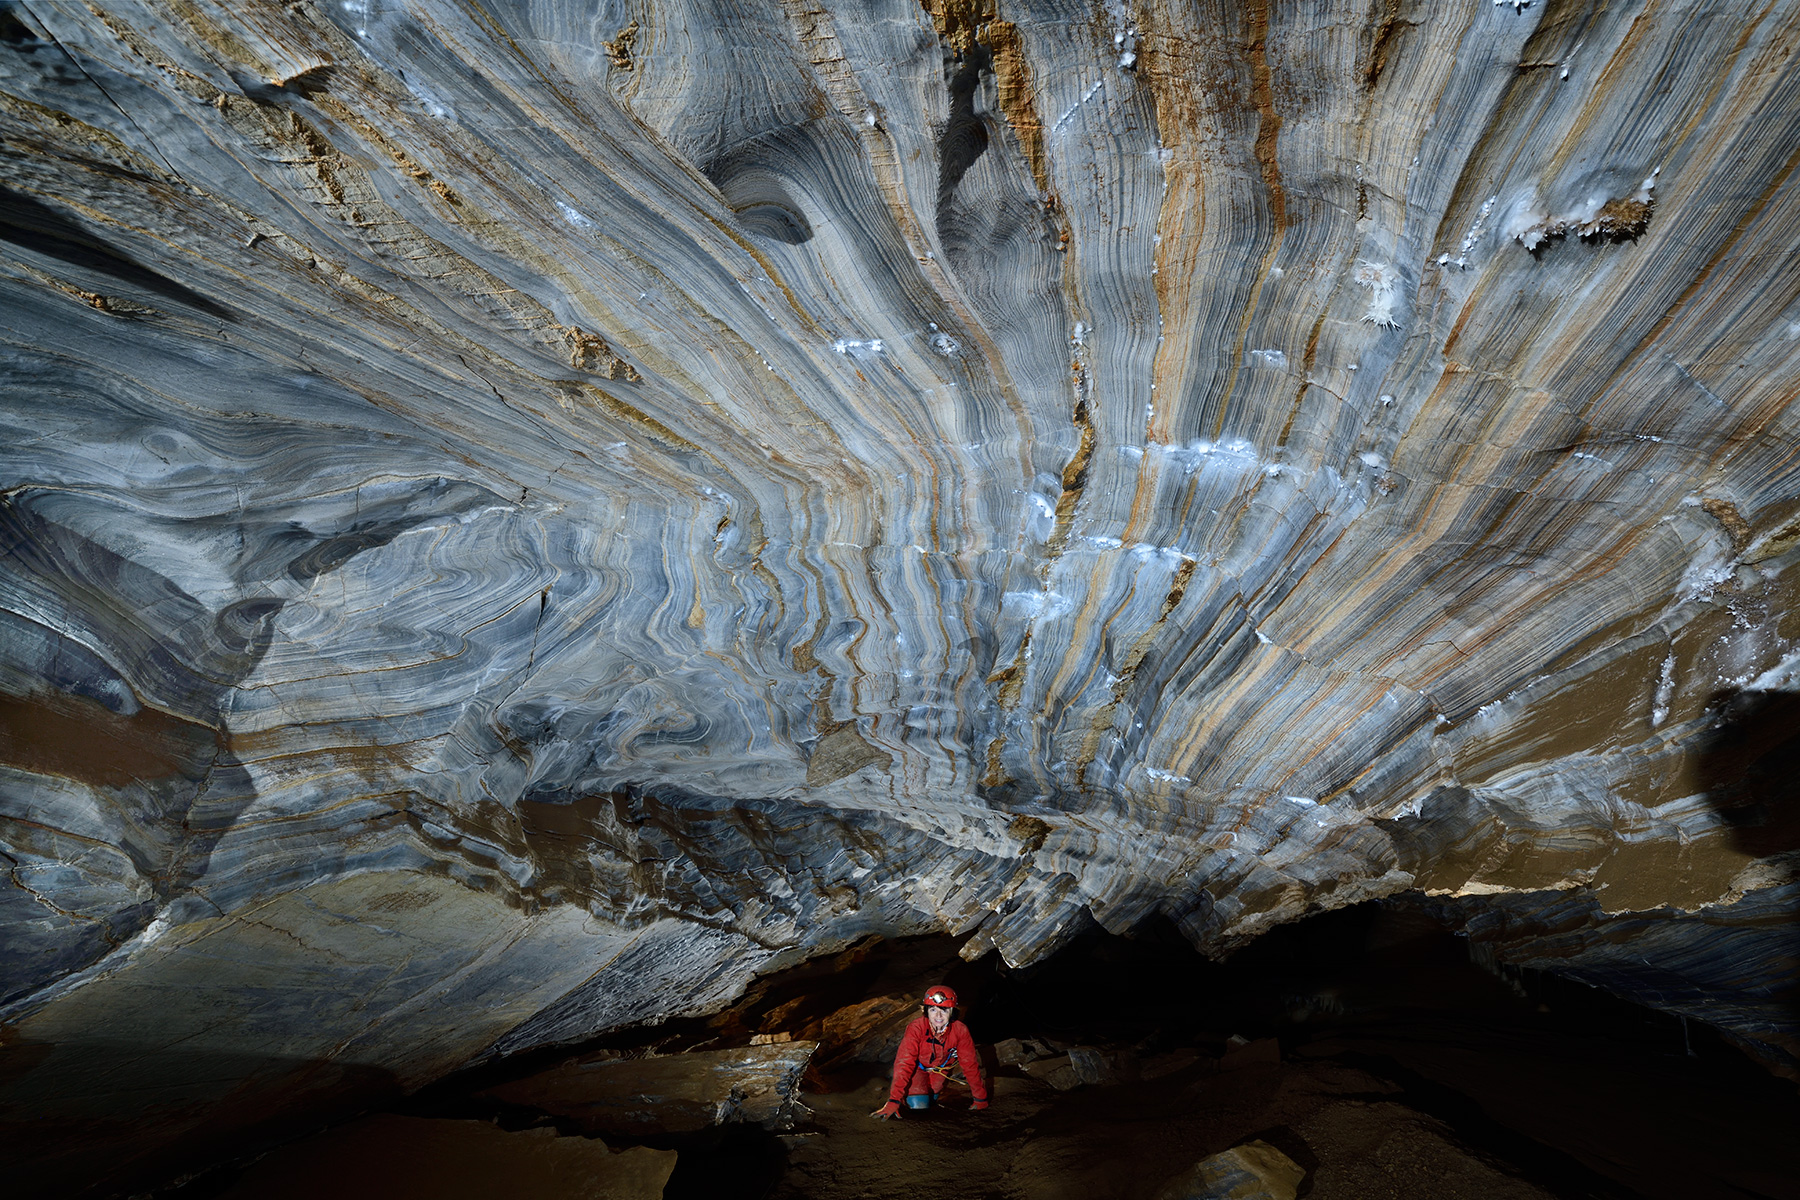 Grotte de Roquebleue (Hérault) - Passage bas dans une galerie creusée dans les calcaires rubanés bleus